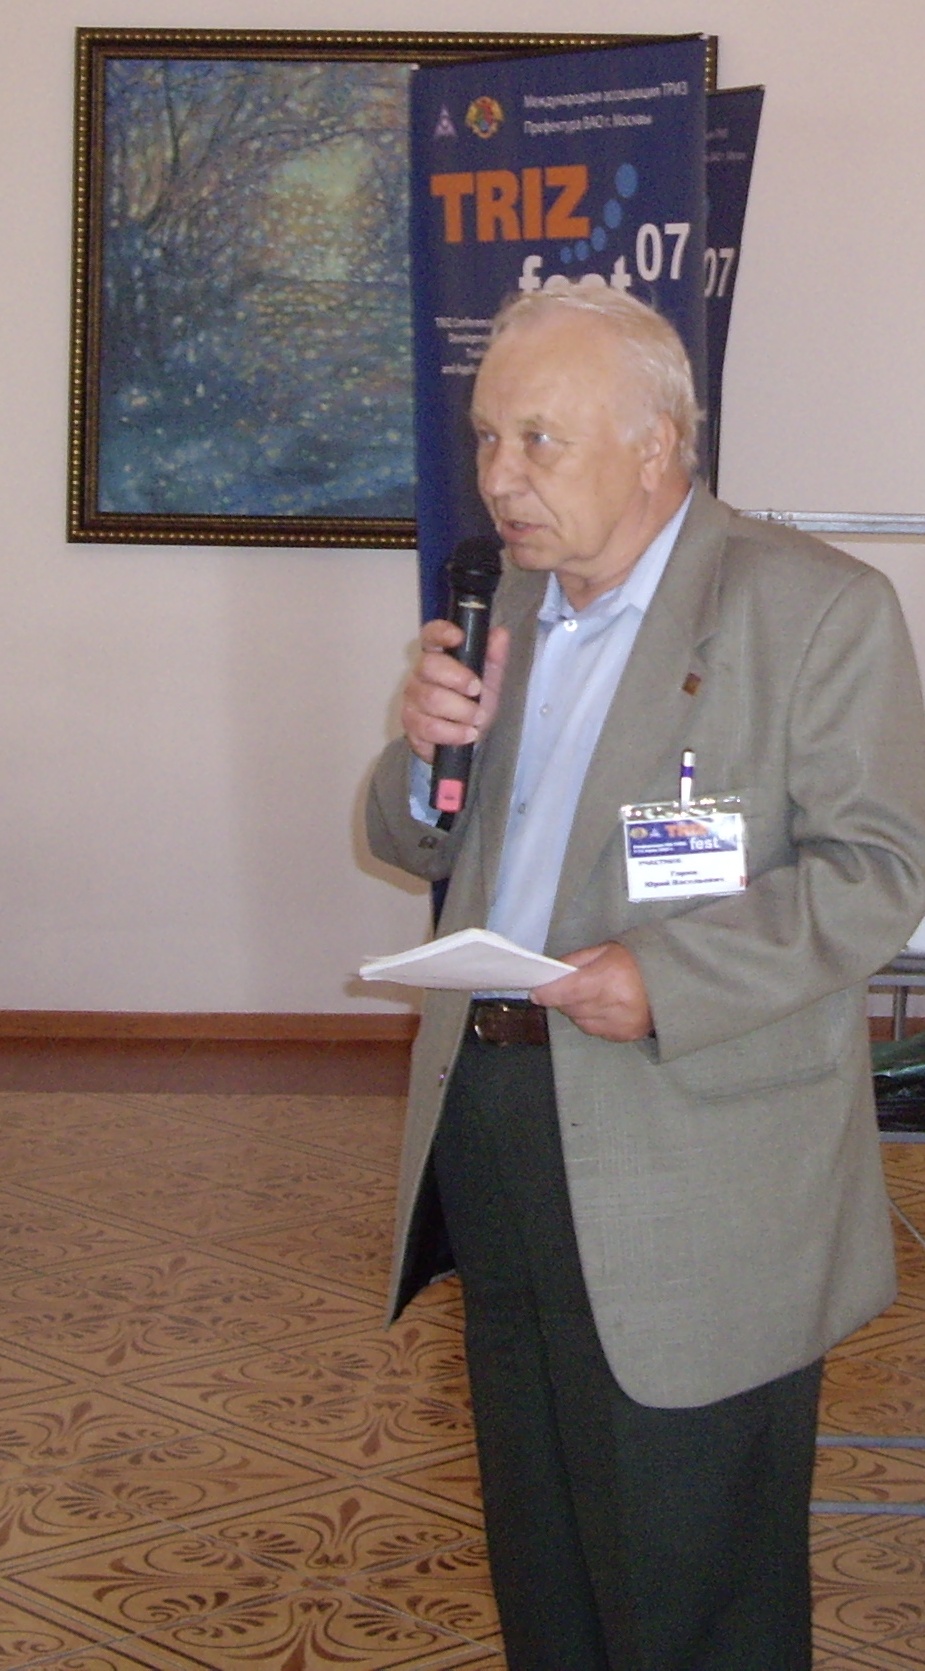 Горин Юрий Васильевич, ТРИЗ Саммит 2007 года, Москва